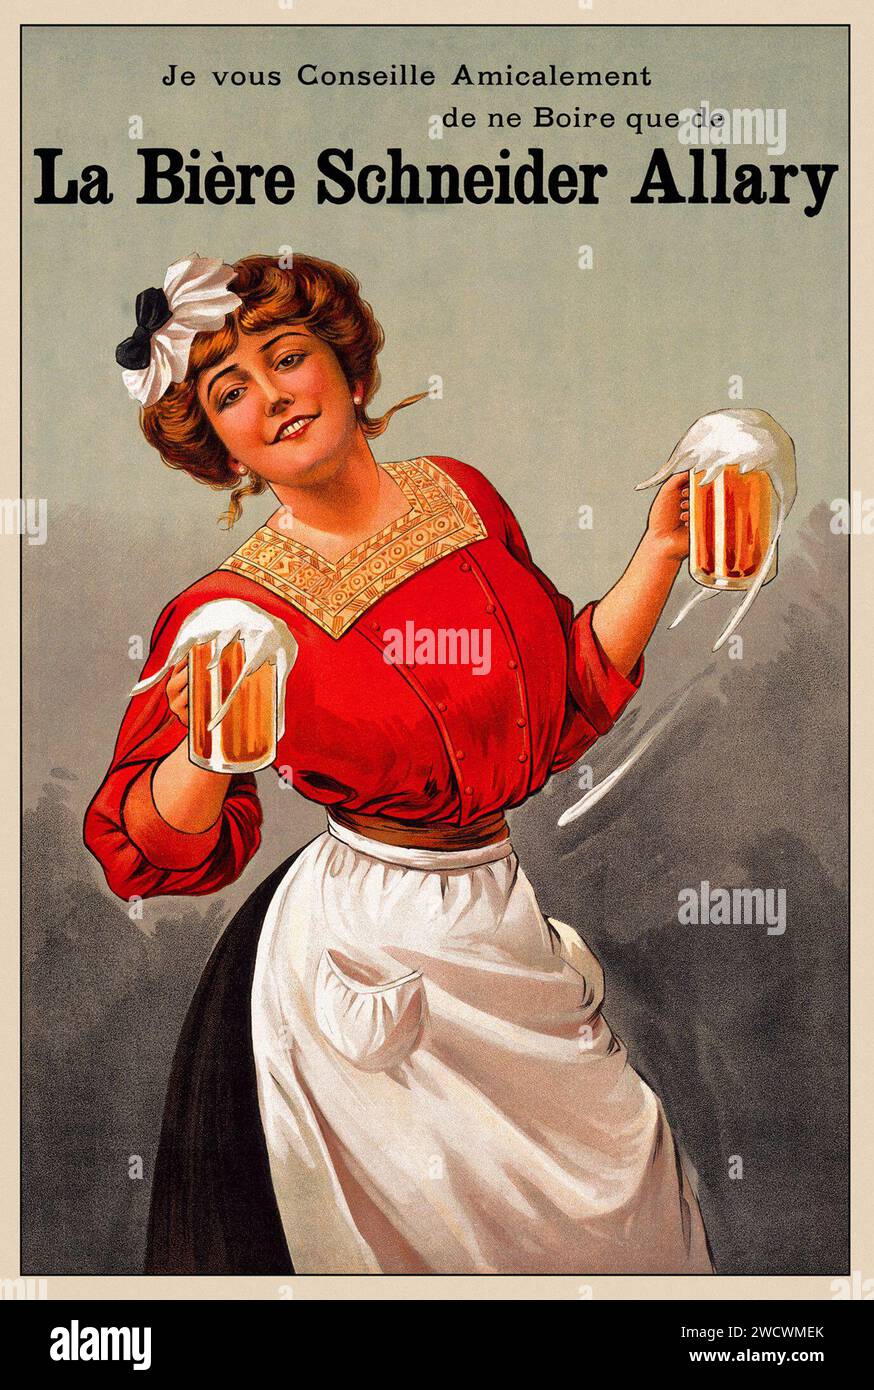 La Biere Schneider Allary - affiche vintage - publicité bière - artiste inconnu, c 1900 Banque D'Images